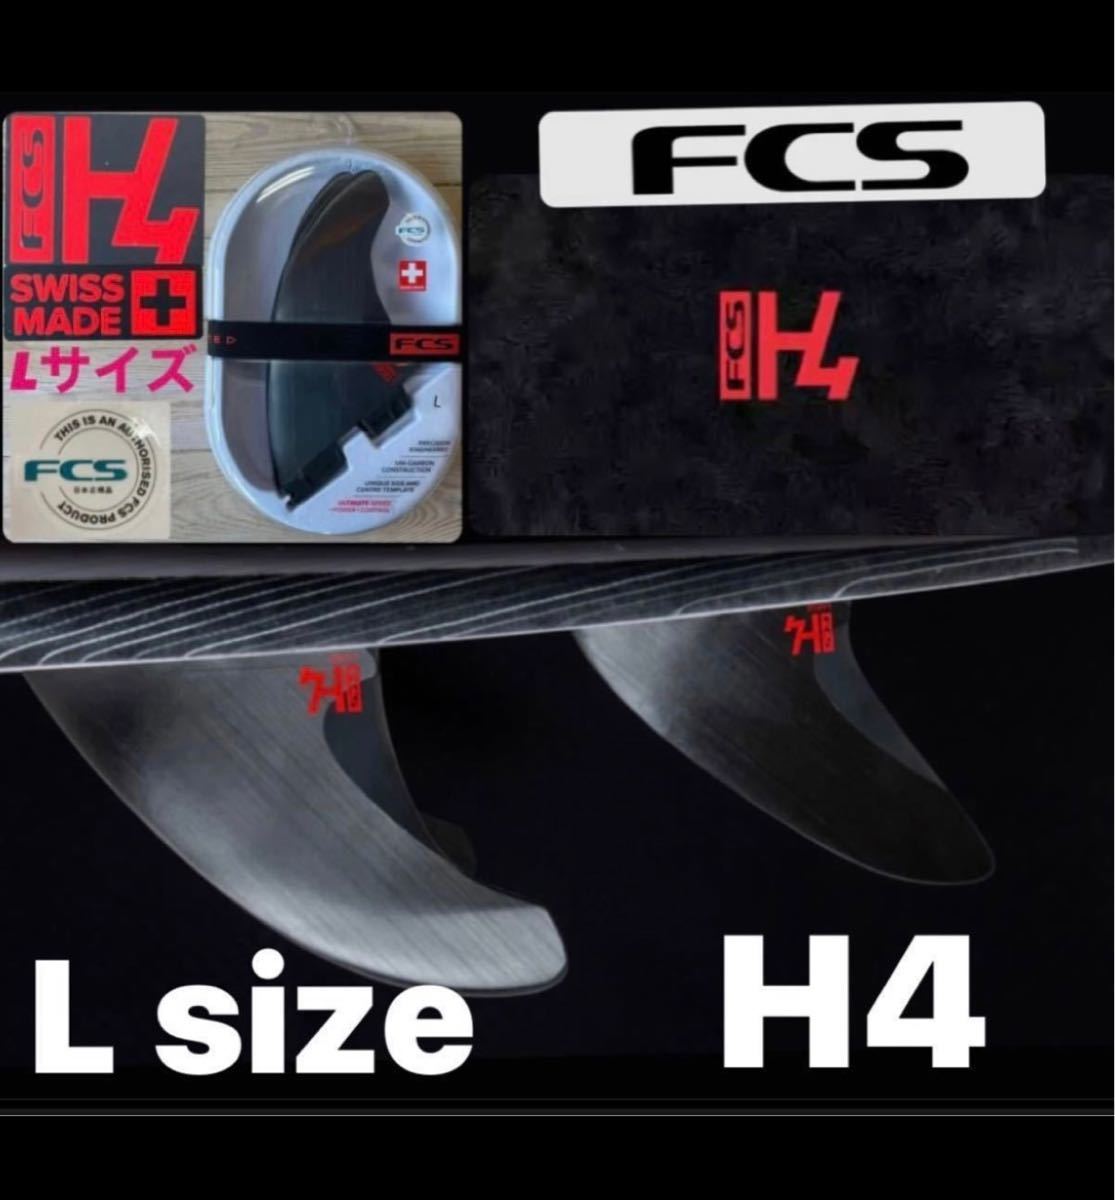 FCS2 H4 Lサイズ トライフィン 新品未使用日本正規販売店購入品2022年